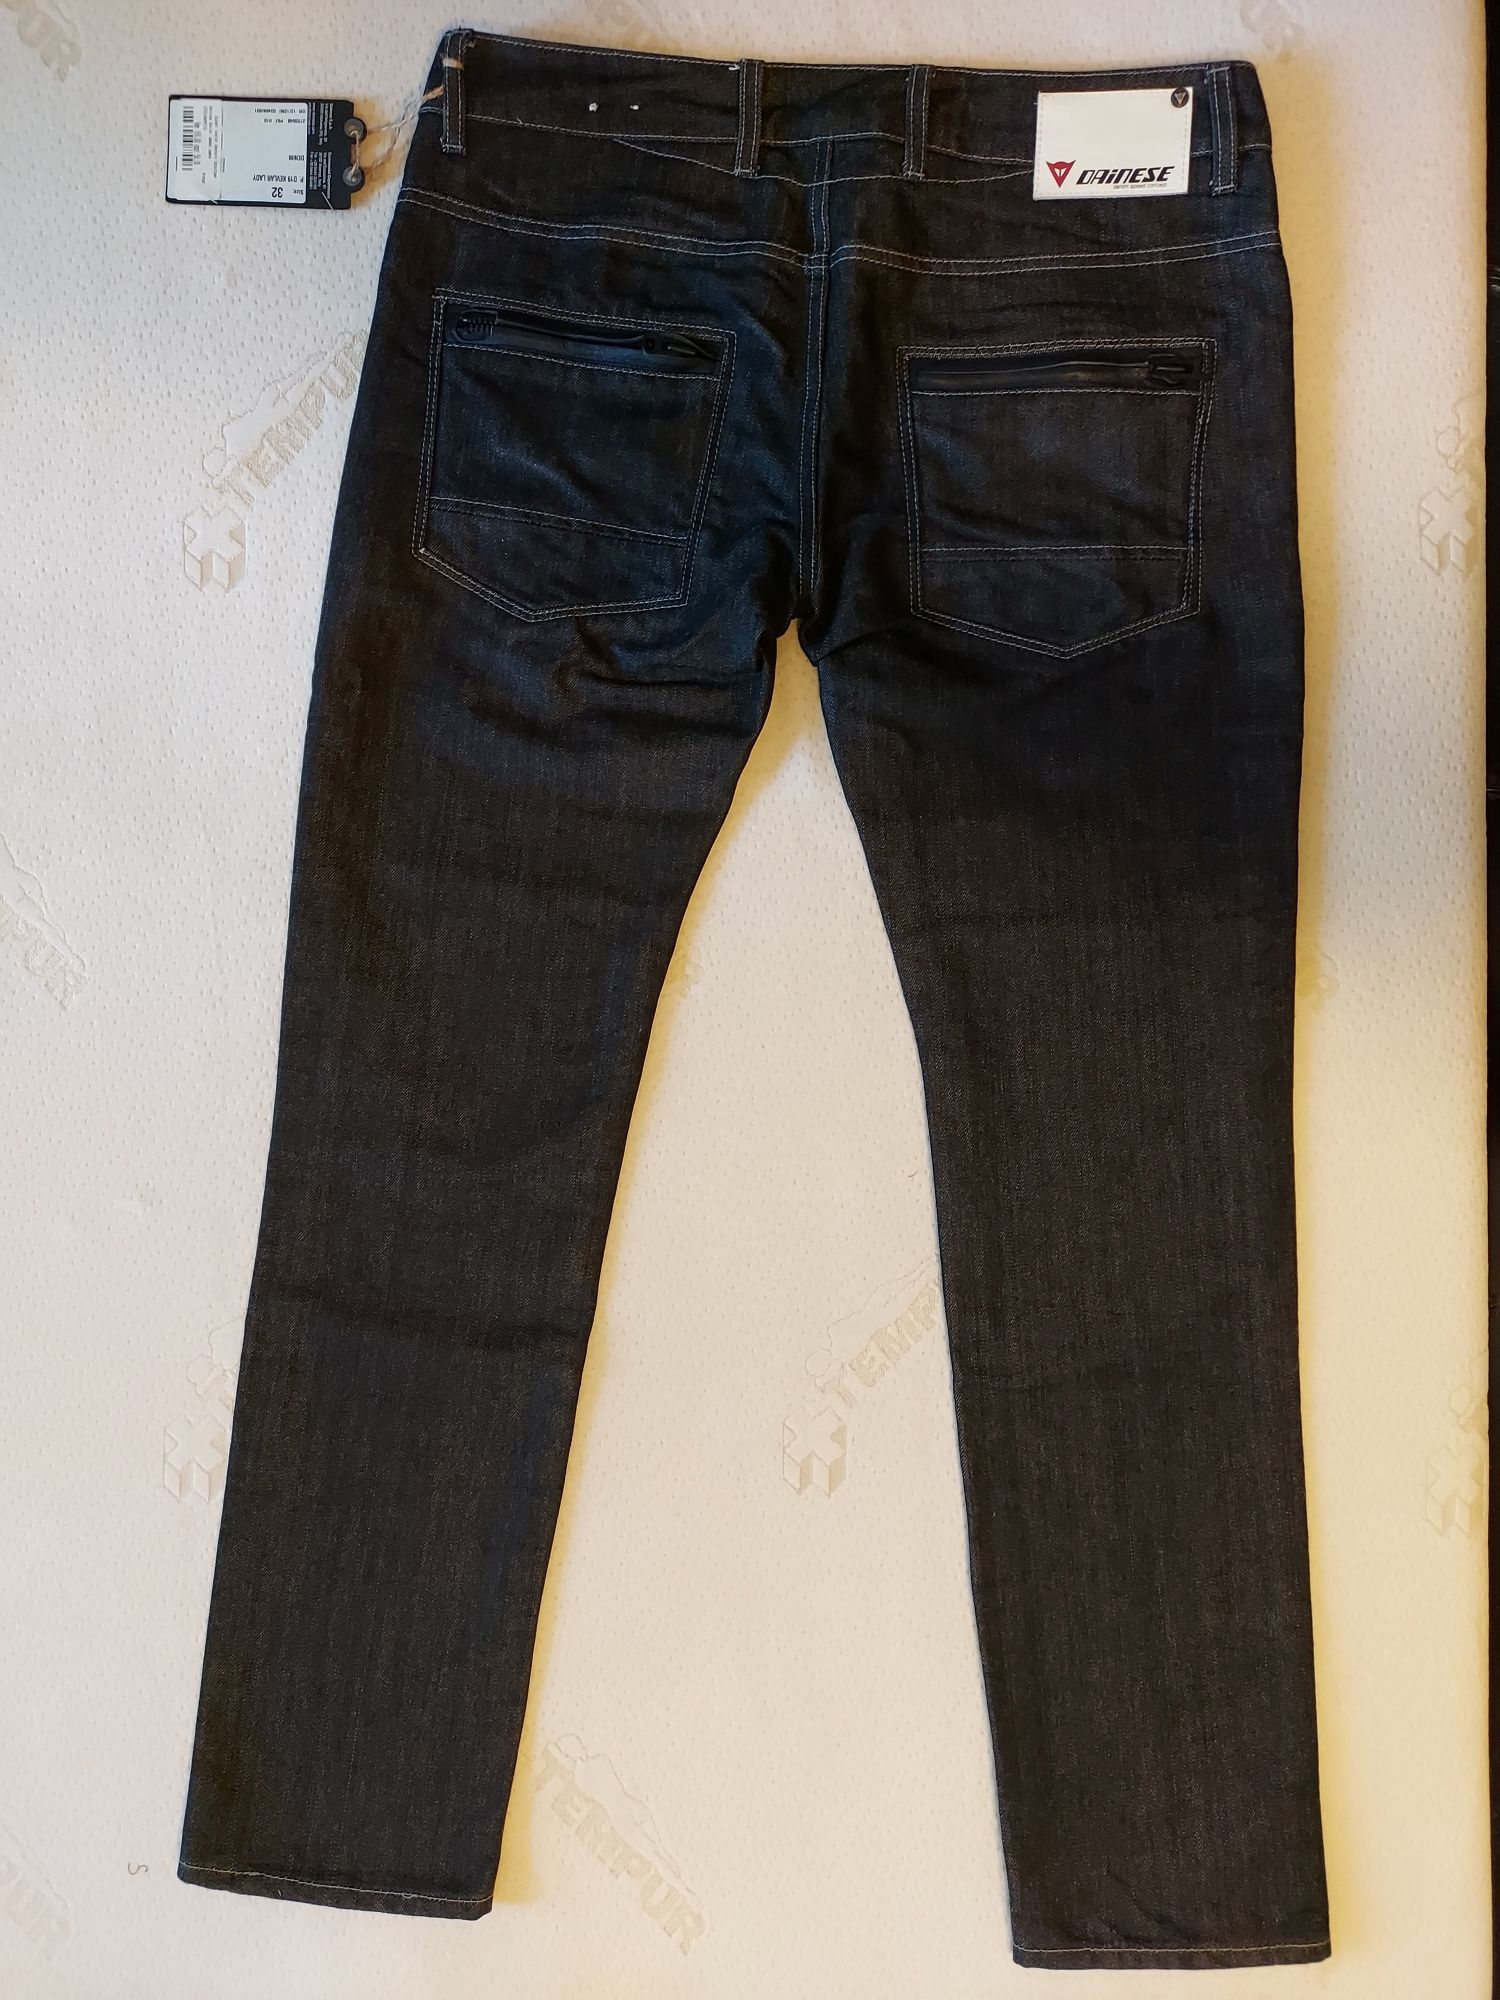 Pantaloni jeans moto de dama Dainese D19, marimea 32, noi.